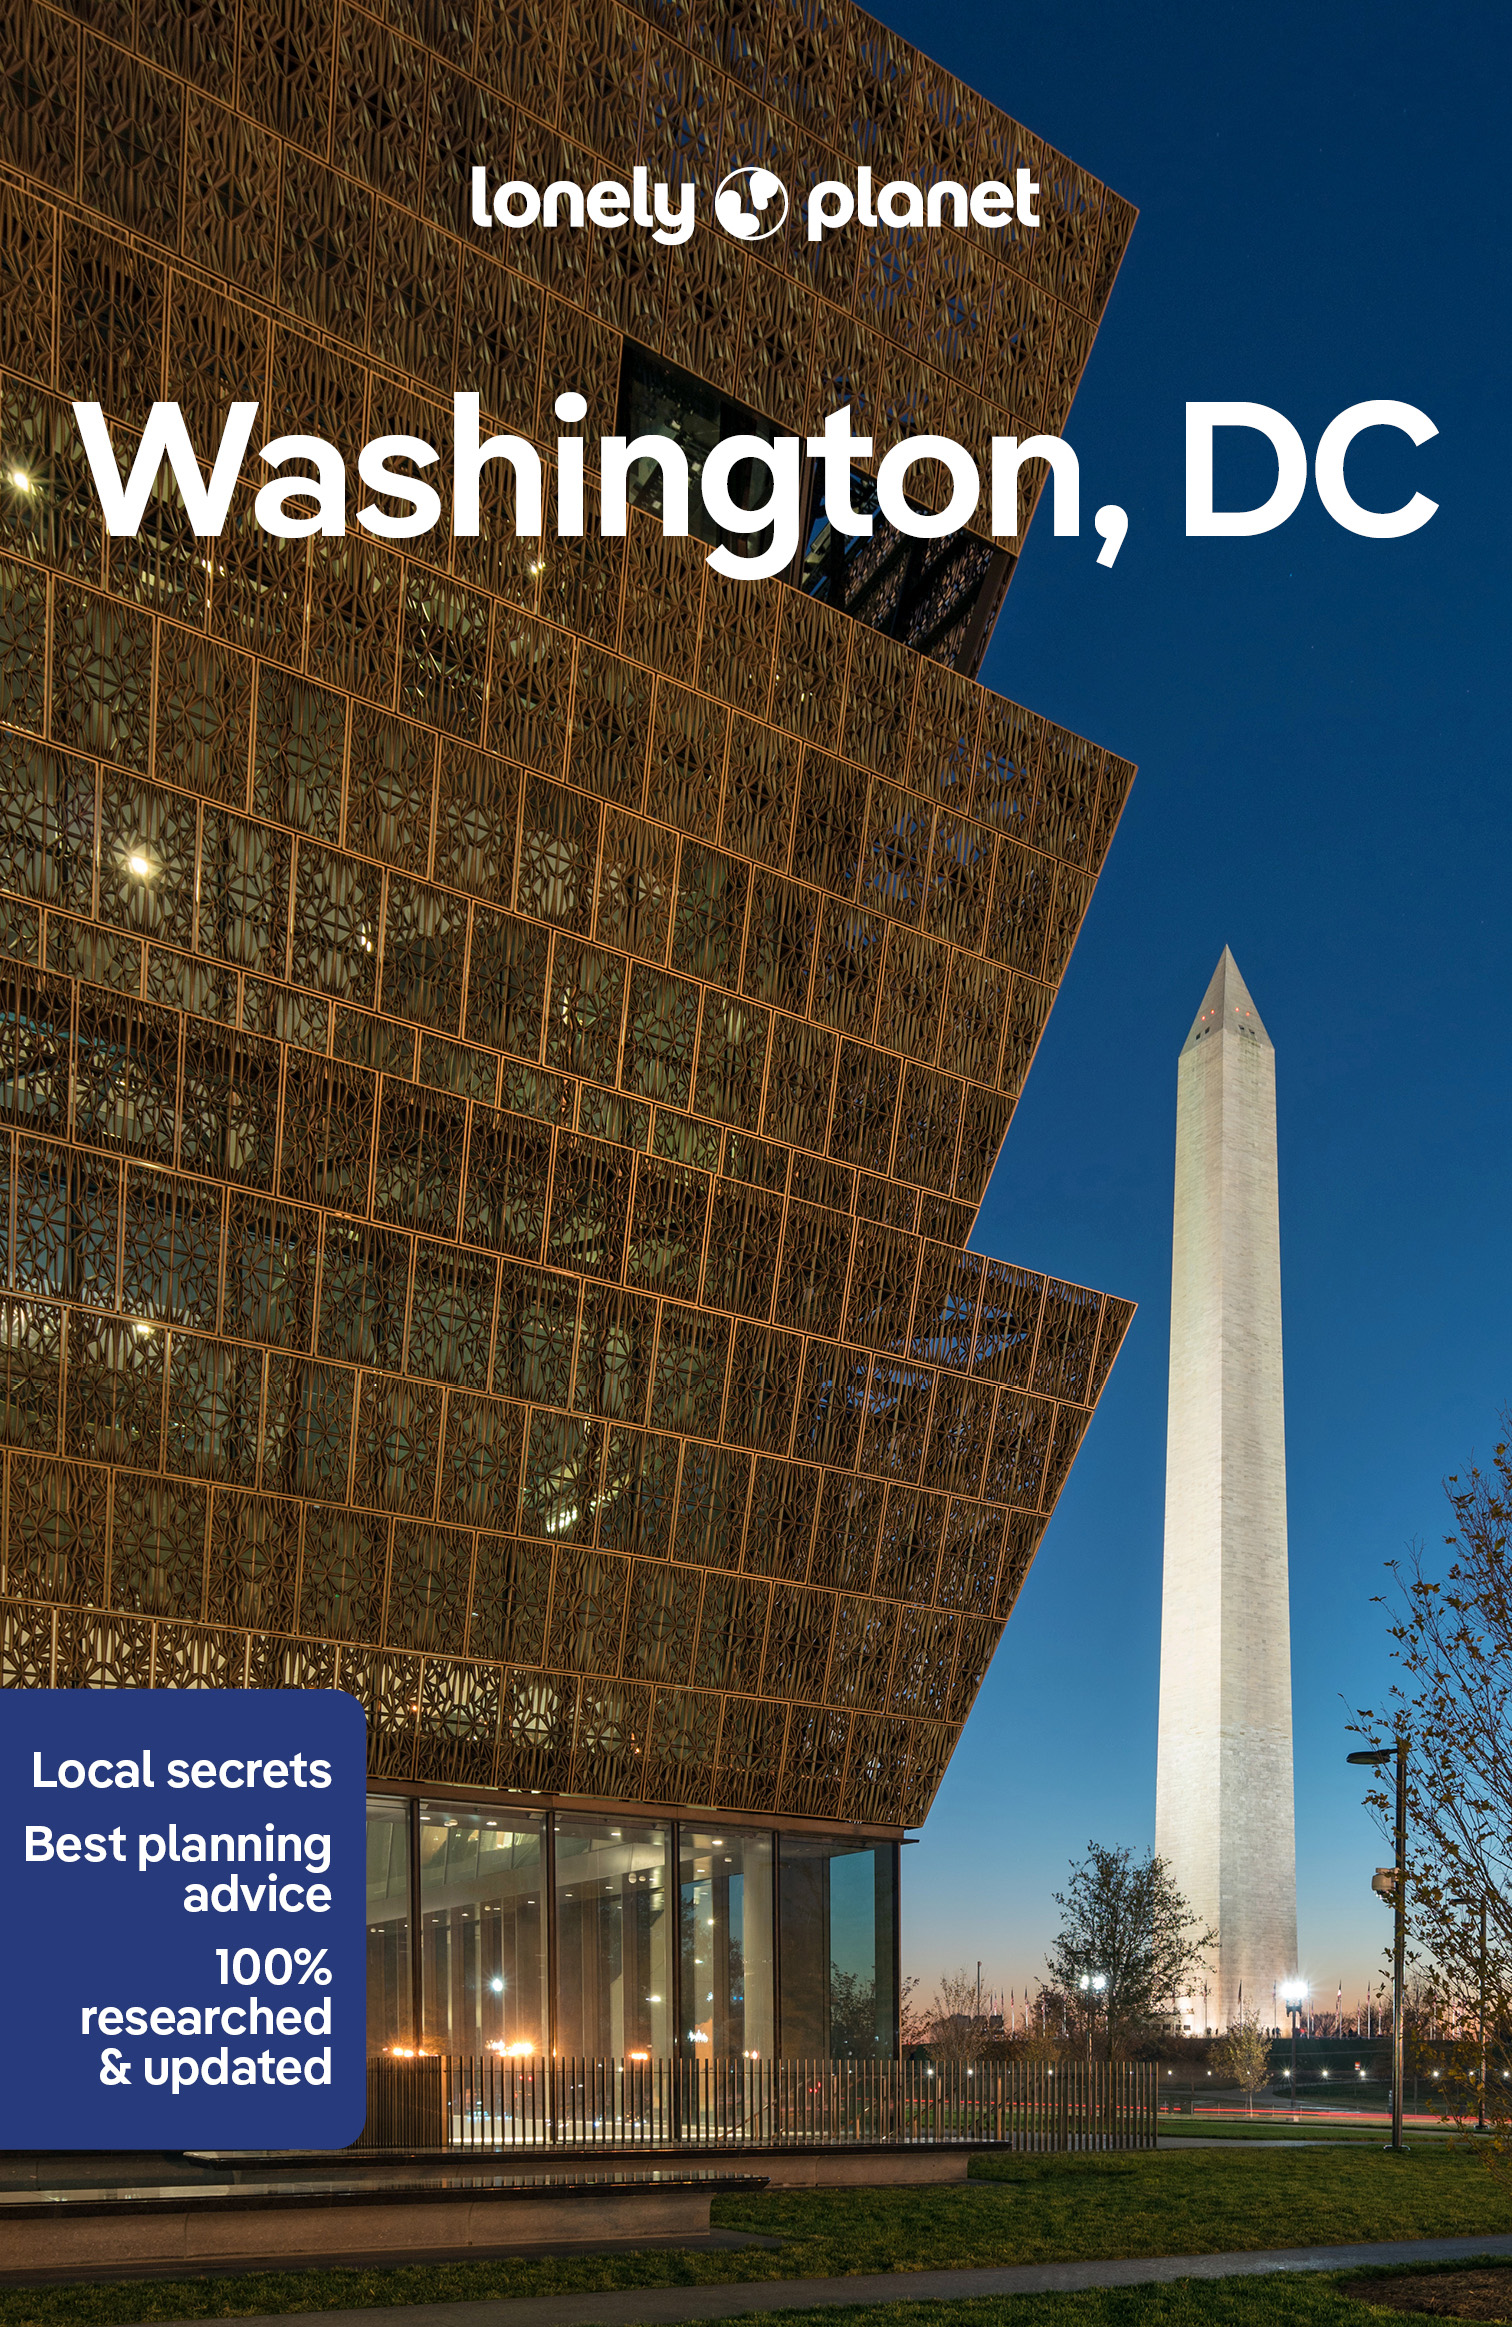 průvodce Washington, DC 8.edice anglicky Lonely Planet